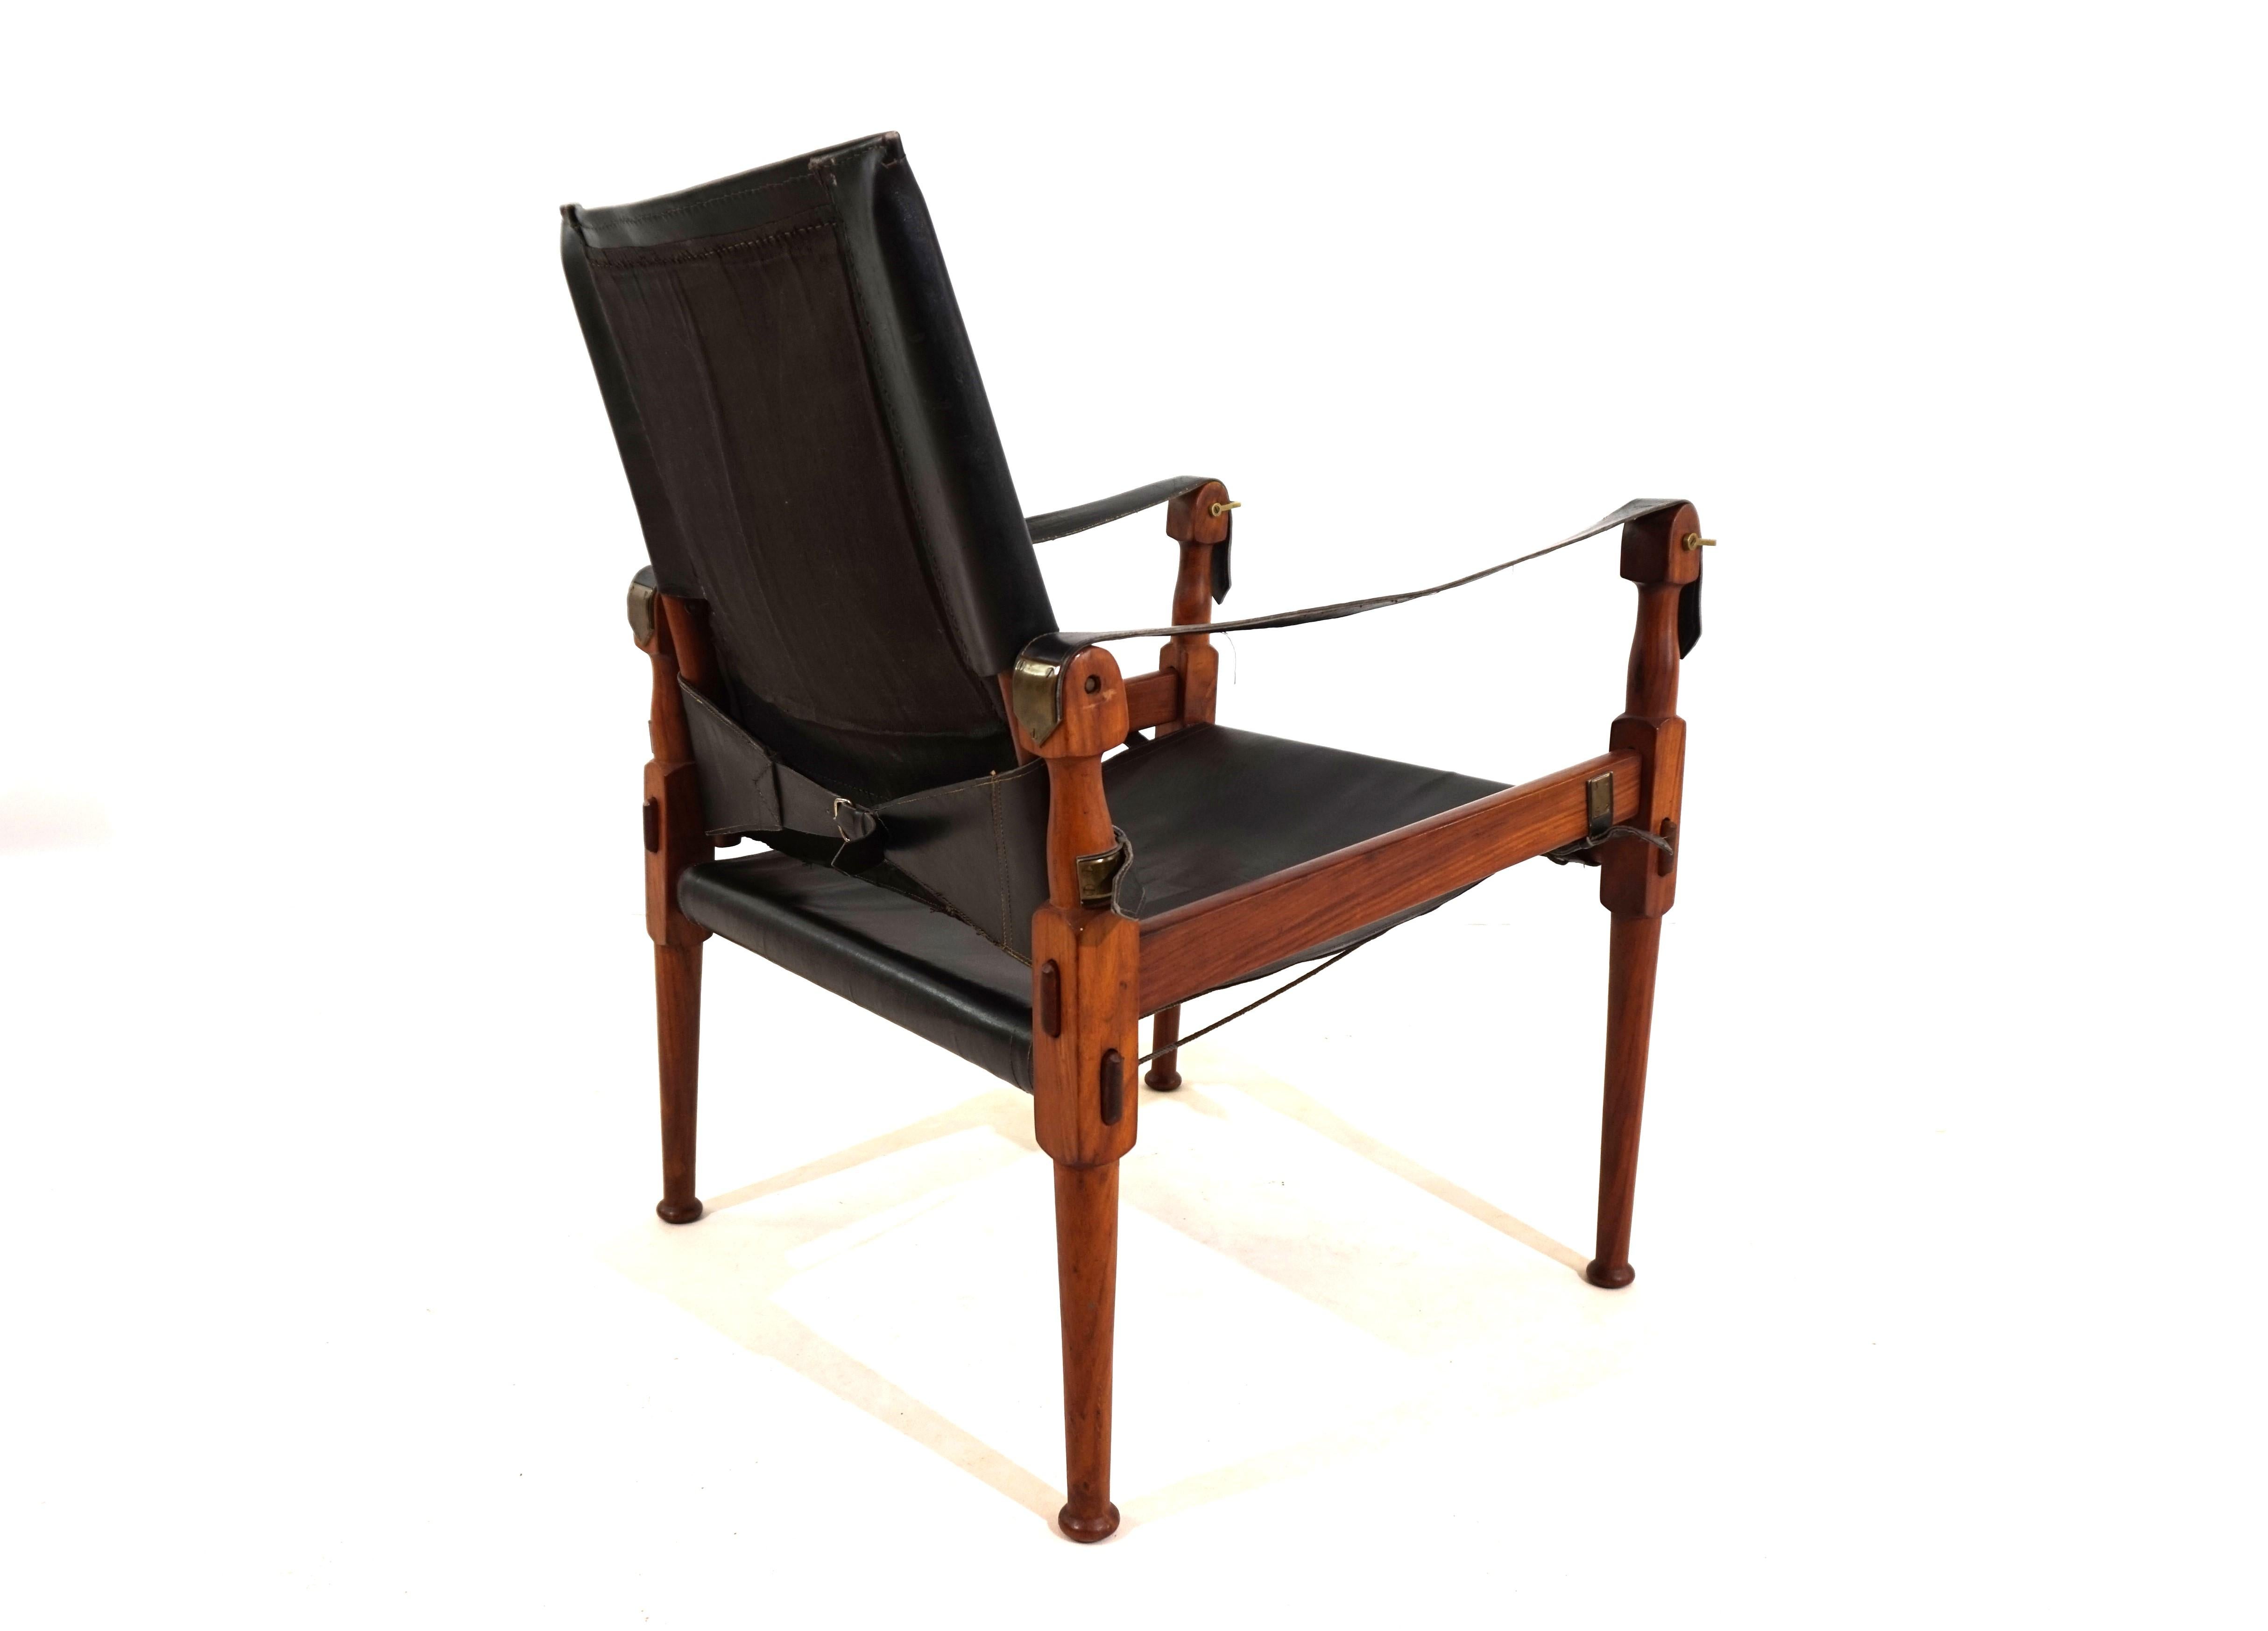 Dieser originale Hayat Roorkee Campaigner Safari-Stuhl aus den 60er Jahren ist in erstklassigem Zustand. Das schwarze Leder hat fast keine sichtbaren Gebrauchsspuren. Die Holzrahmen aus schönem Teakholz sind in sehr gutem Zustand. Die Spannseile